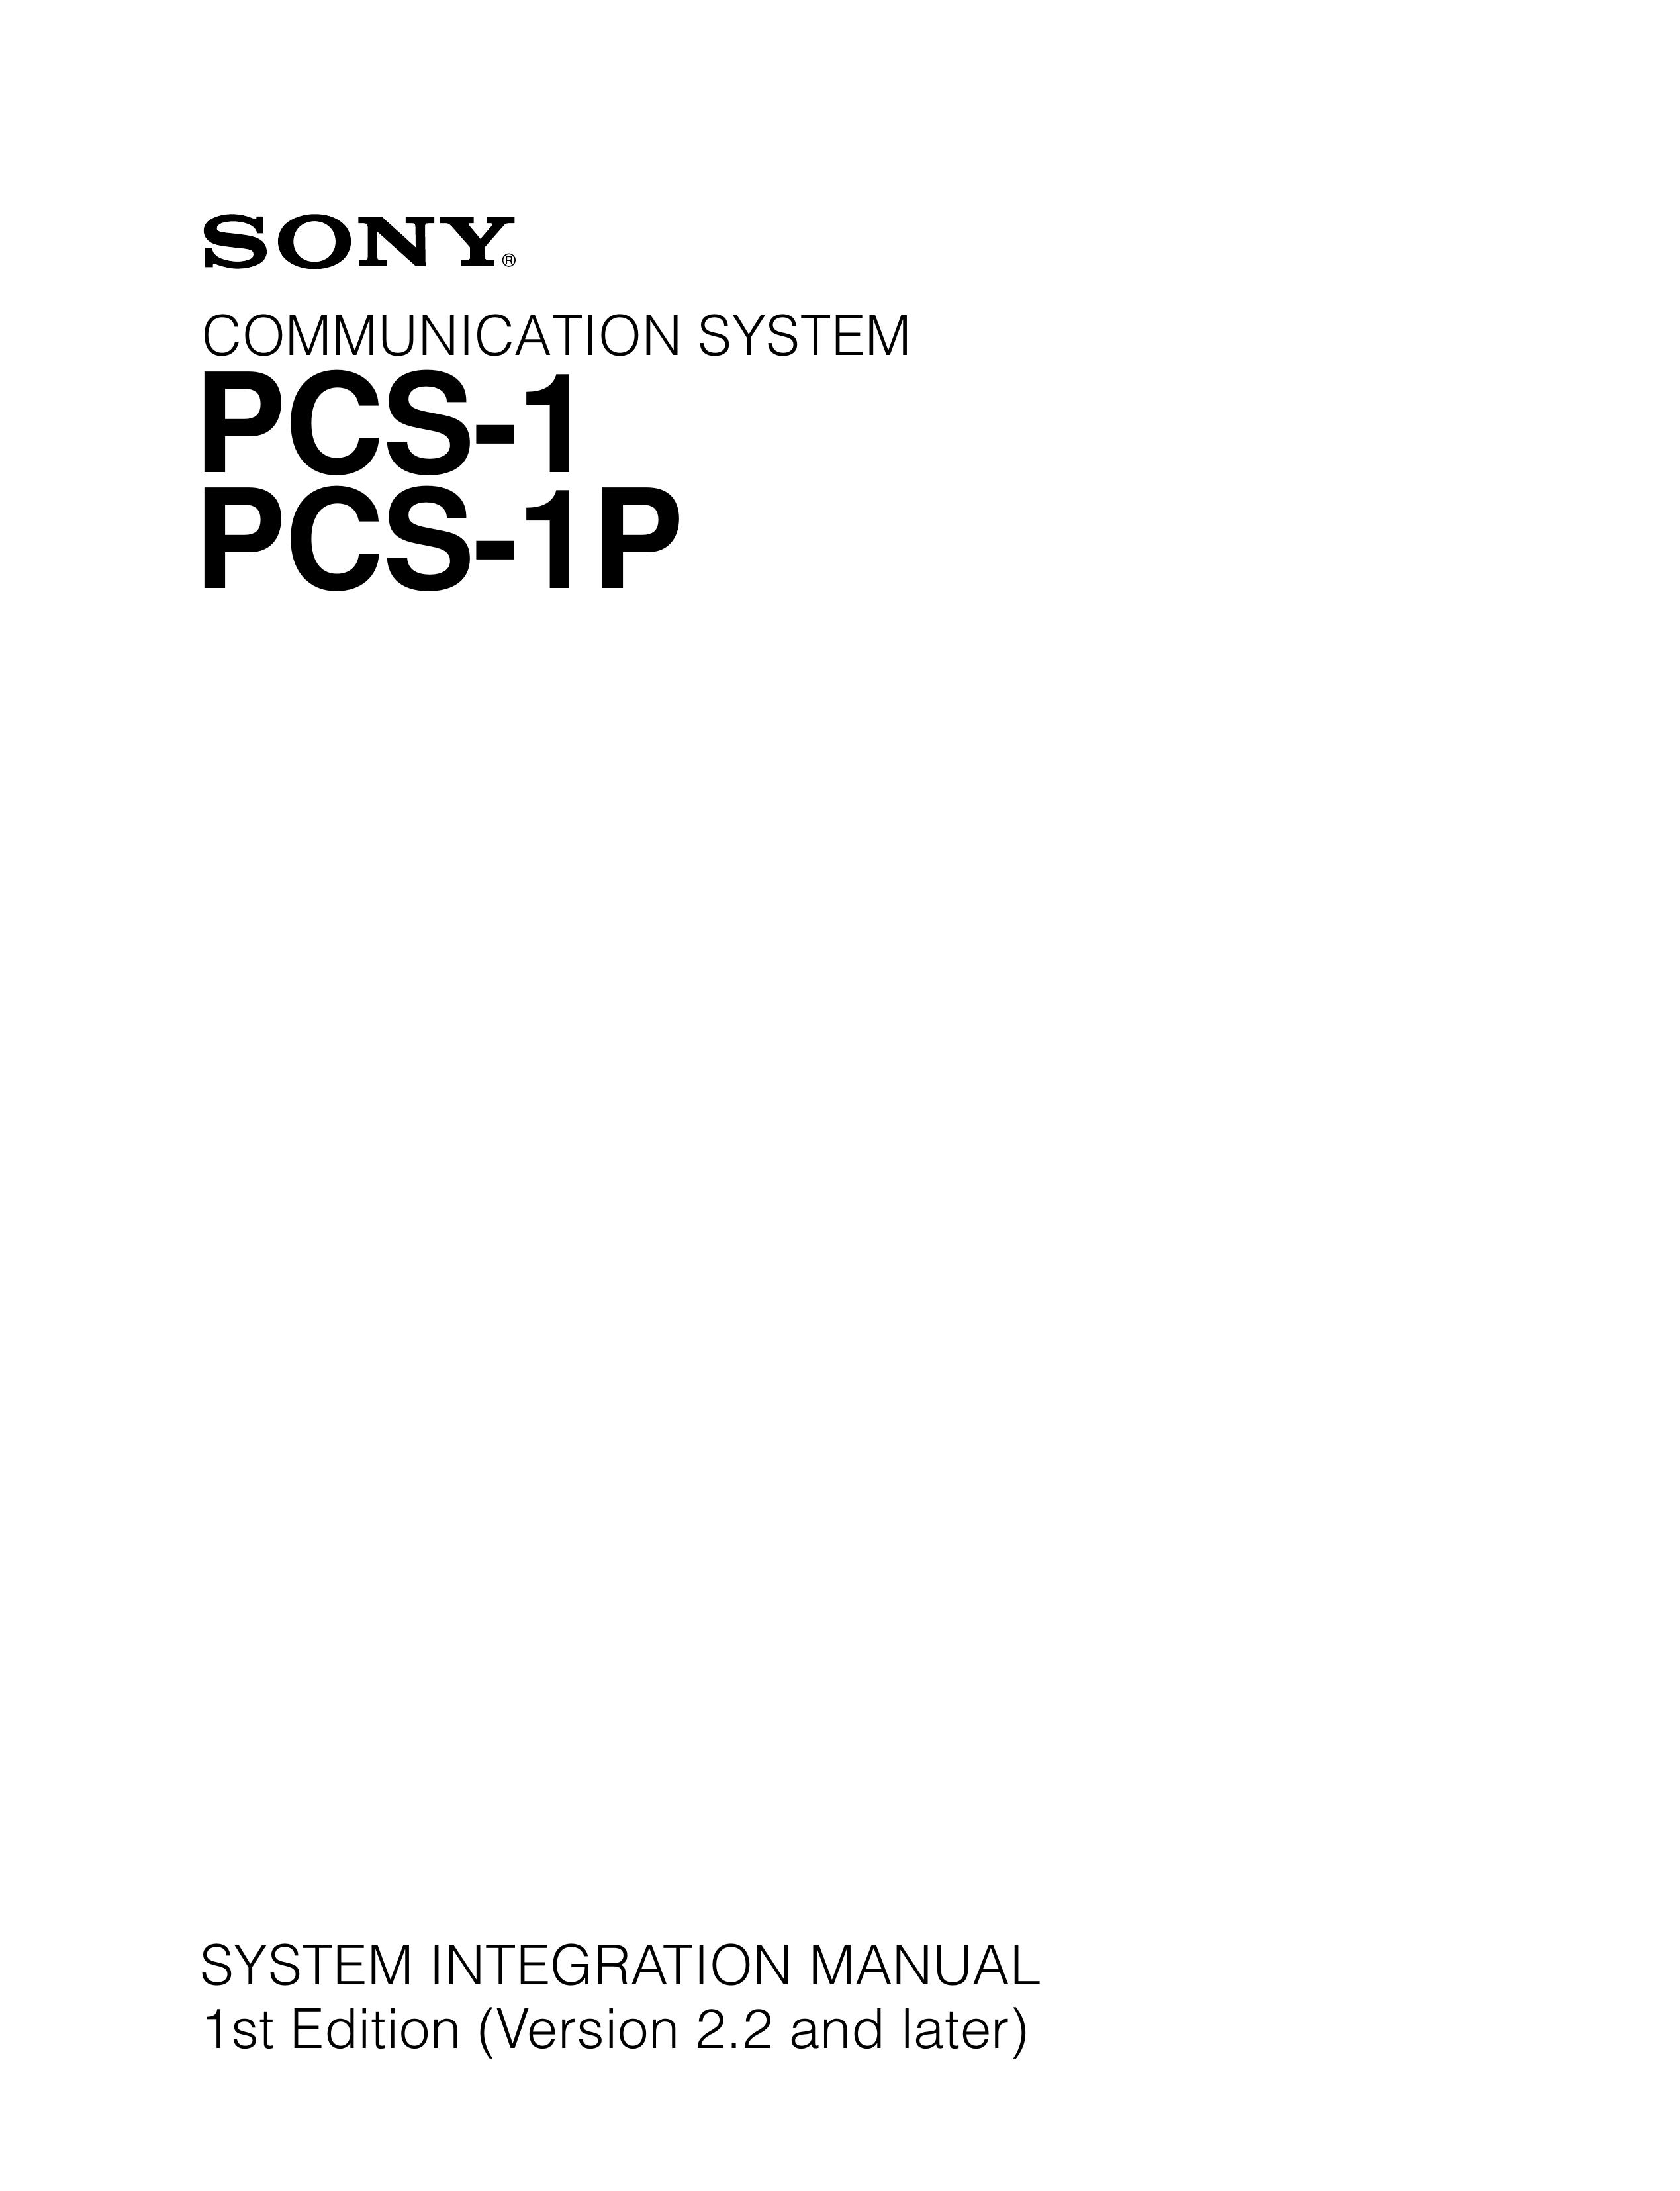 Sony PCS-1 Marine Radio User Manual